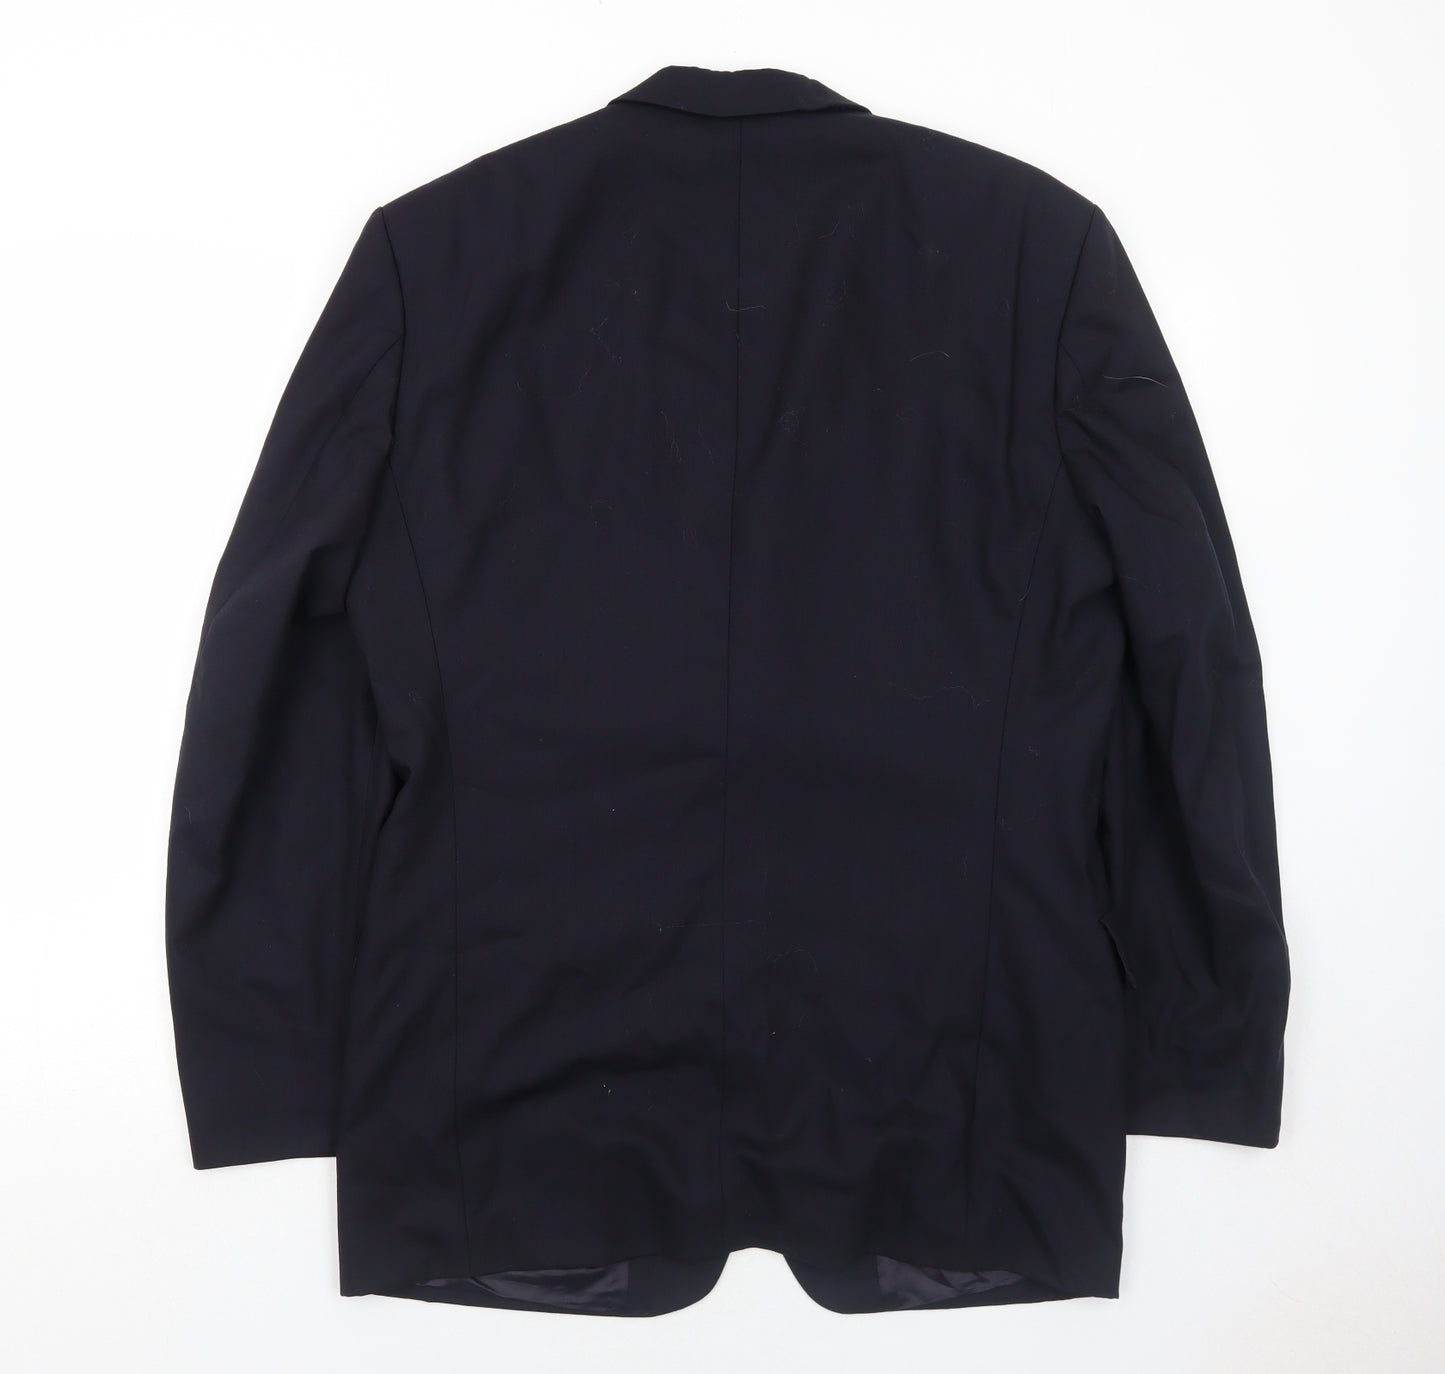 Odermark Mens Blue Wool Jacket Suit Jacket Size 42 Regular